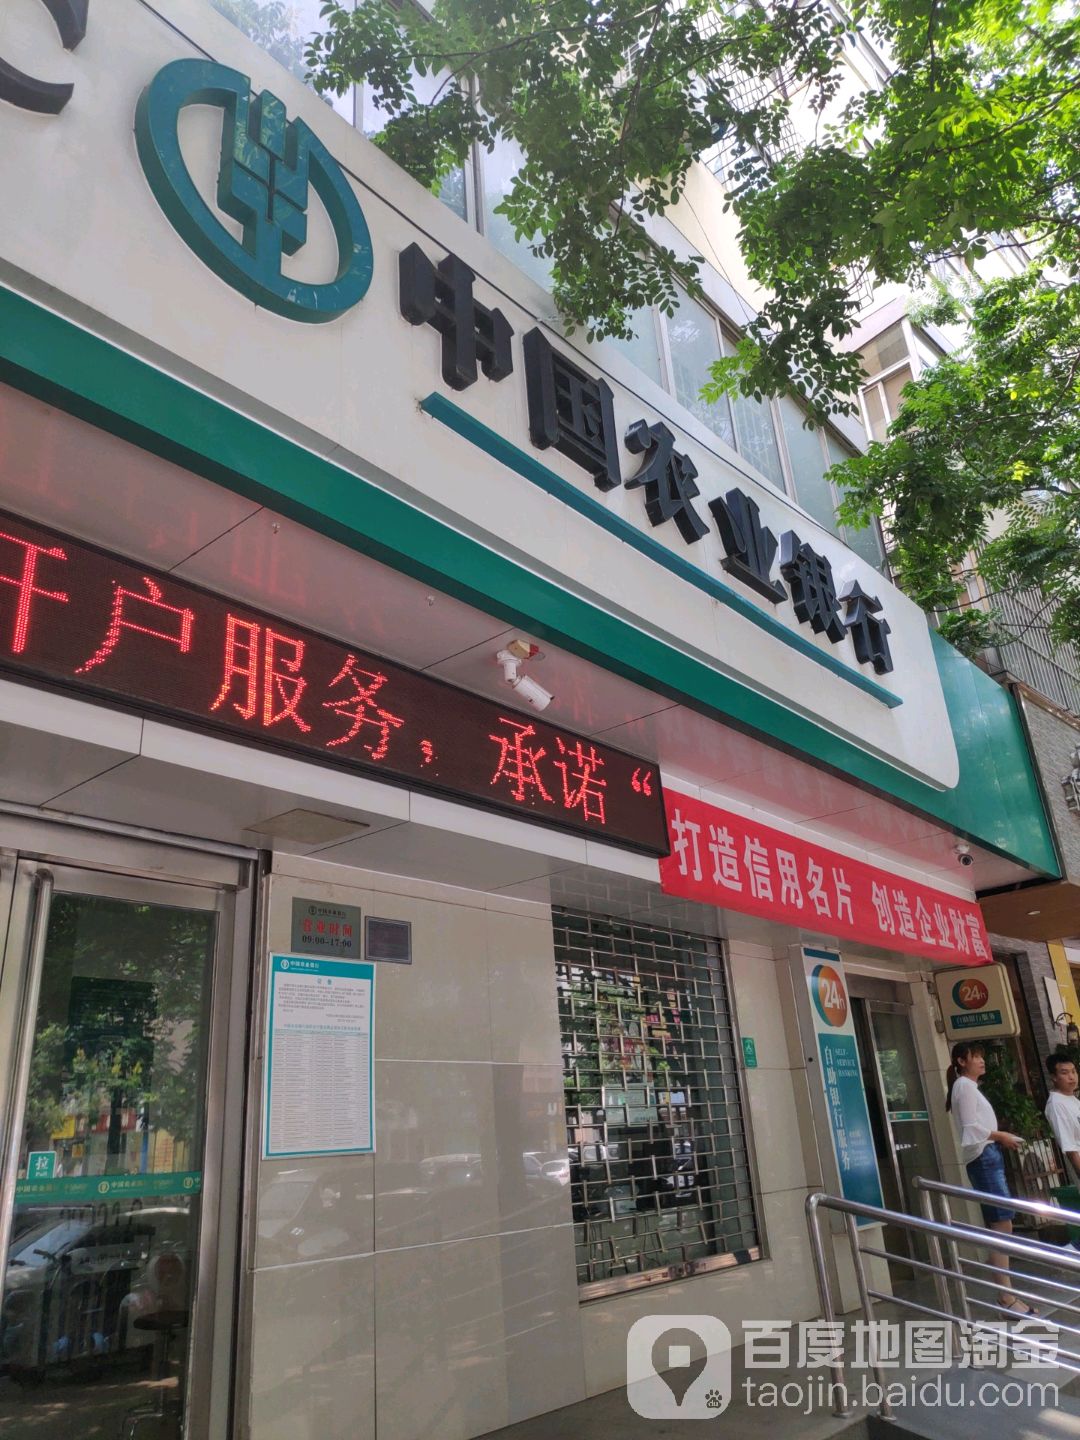 中國農業銀行24小時自助銀行(文化北路店)